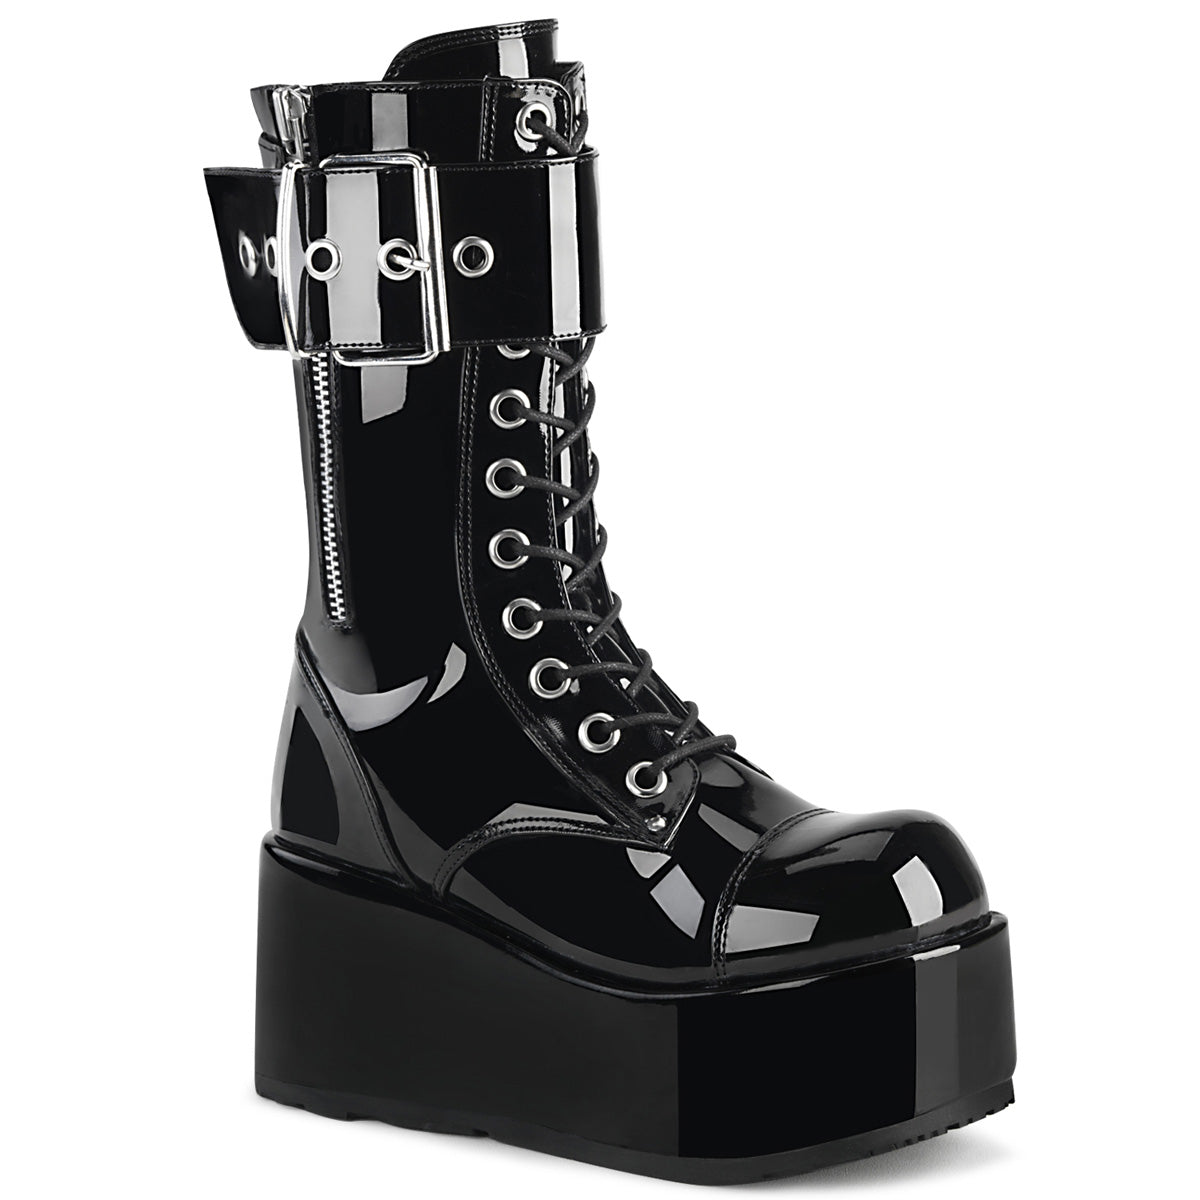 PETROL-150 Black Mid-Calf Boots